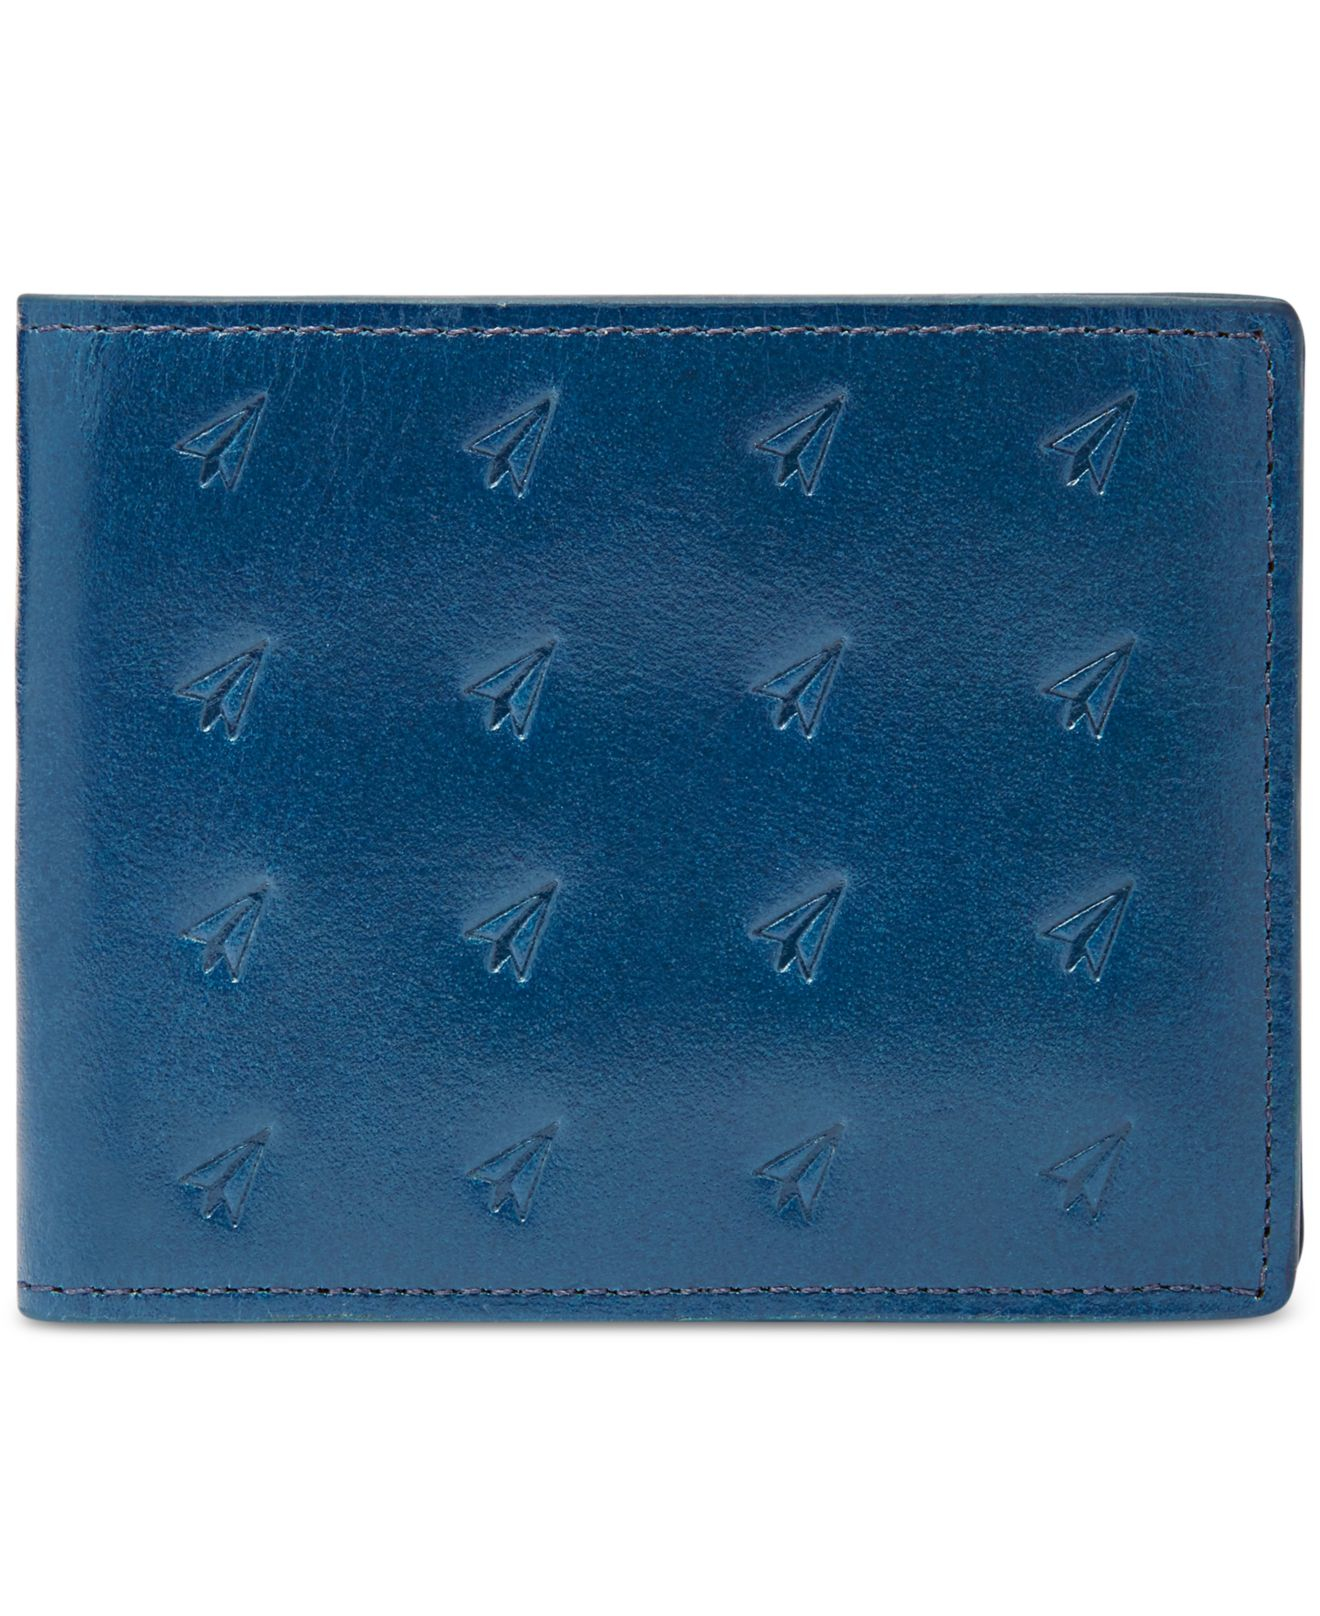 Fossil Helix L-zip Bi-fold Leather Wallet in Blue for Men | Lyst